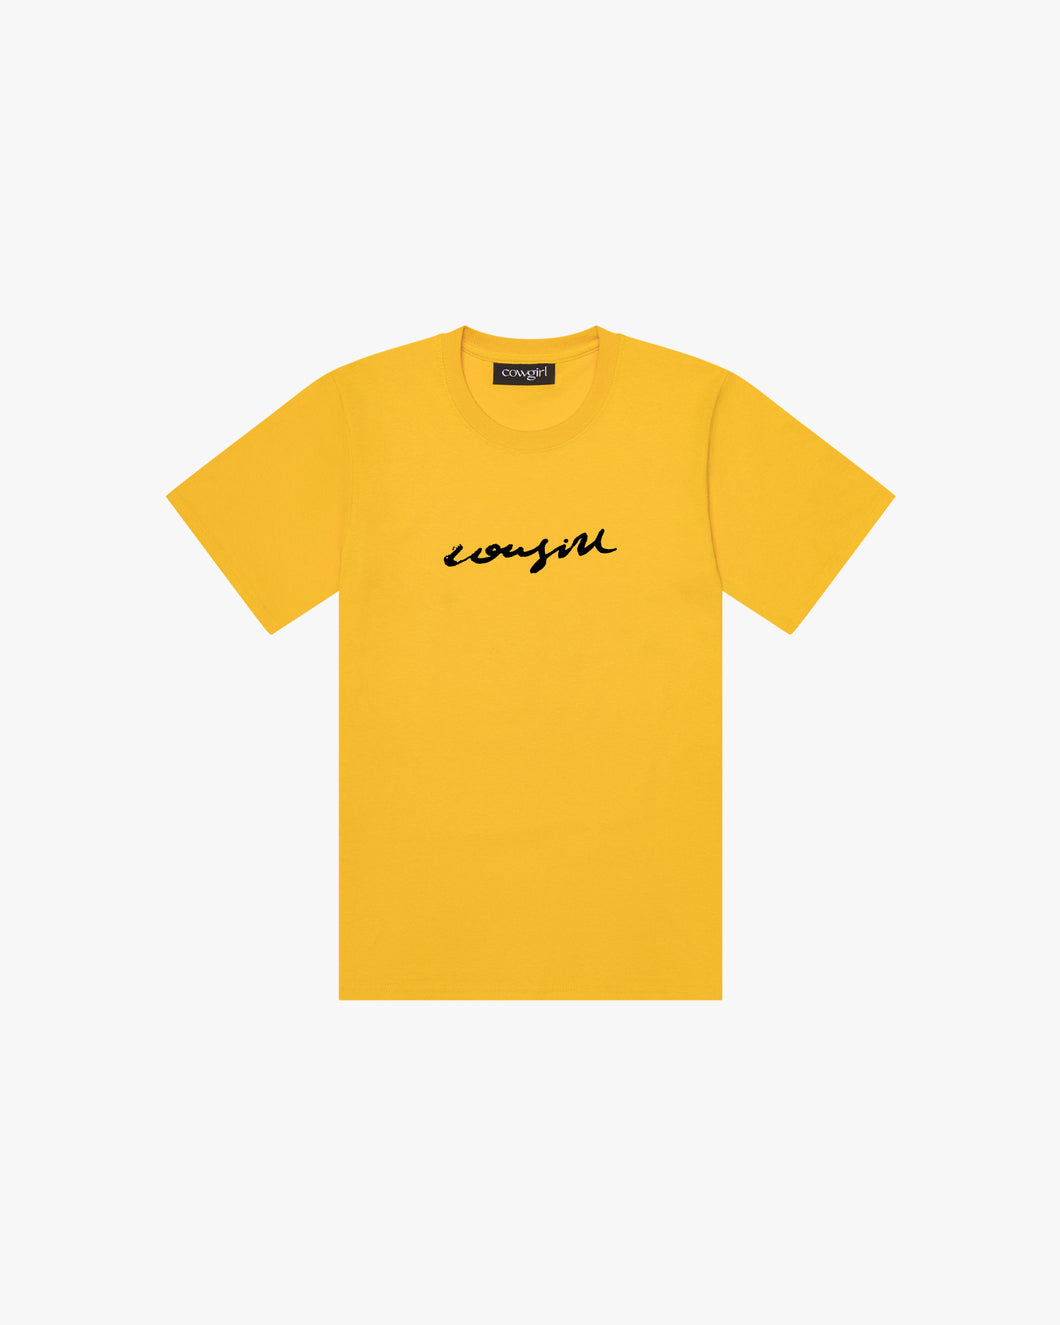 Signature Shirt (Yellow, EXTRA LARGE)